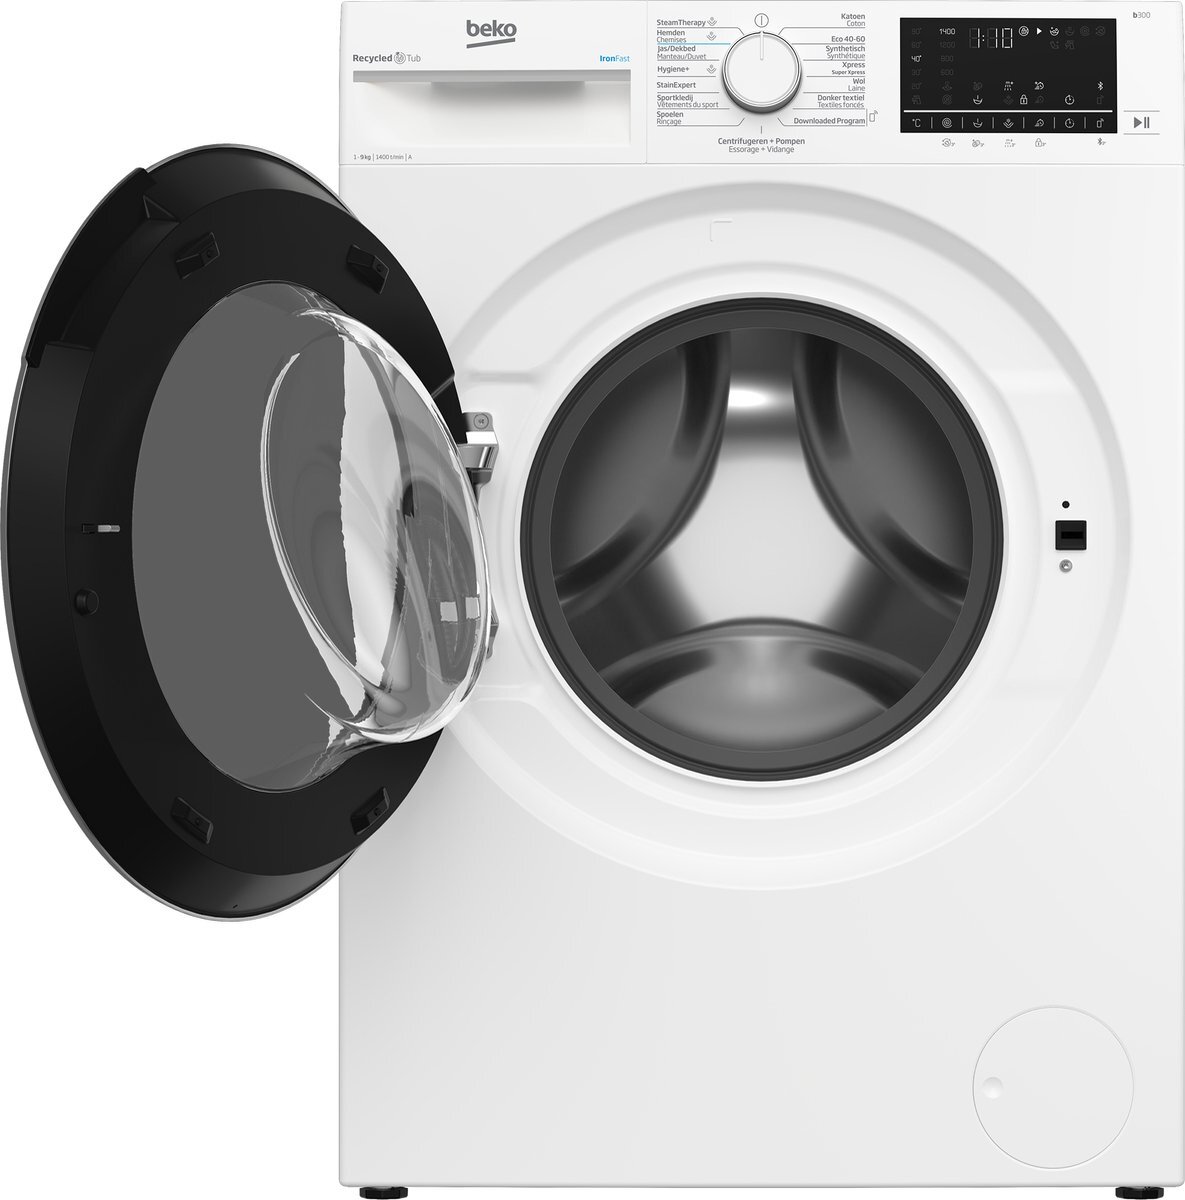 omhelzing Verplicht IJver Beko B3WT5841WSC - RecycledTub™ - Wasmachine wasmachine kopen? |  Kieskeurig.nl | helpt je kiezen